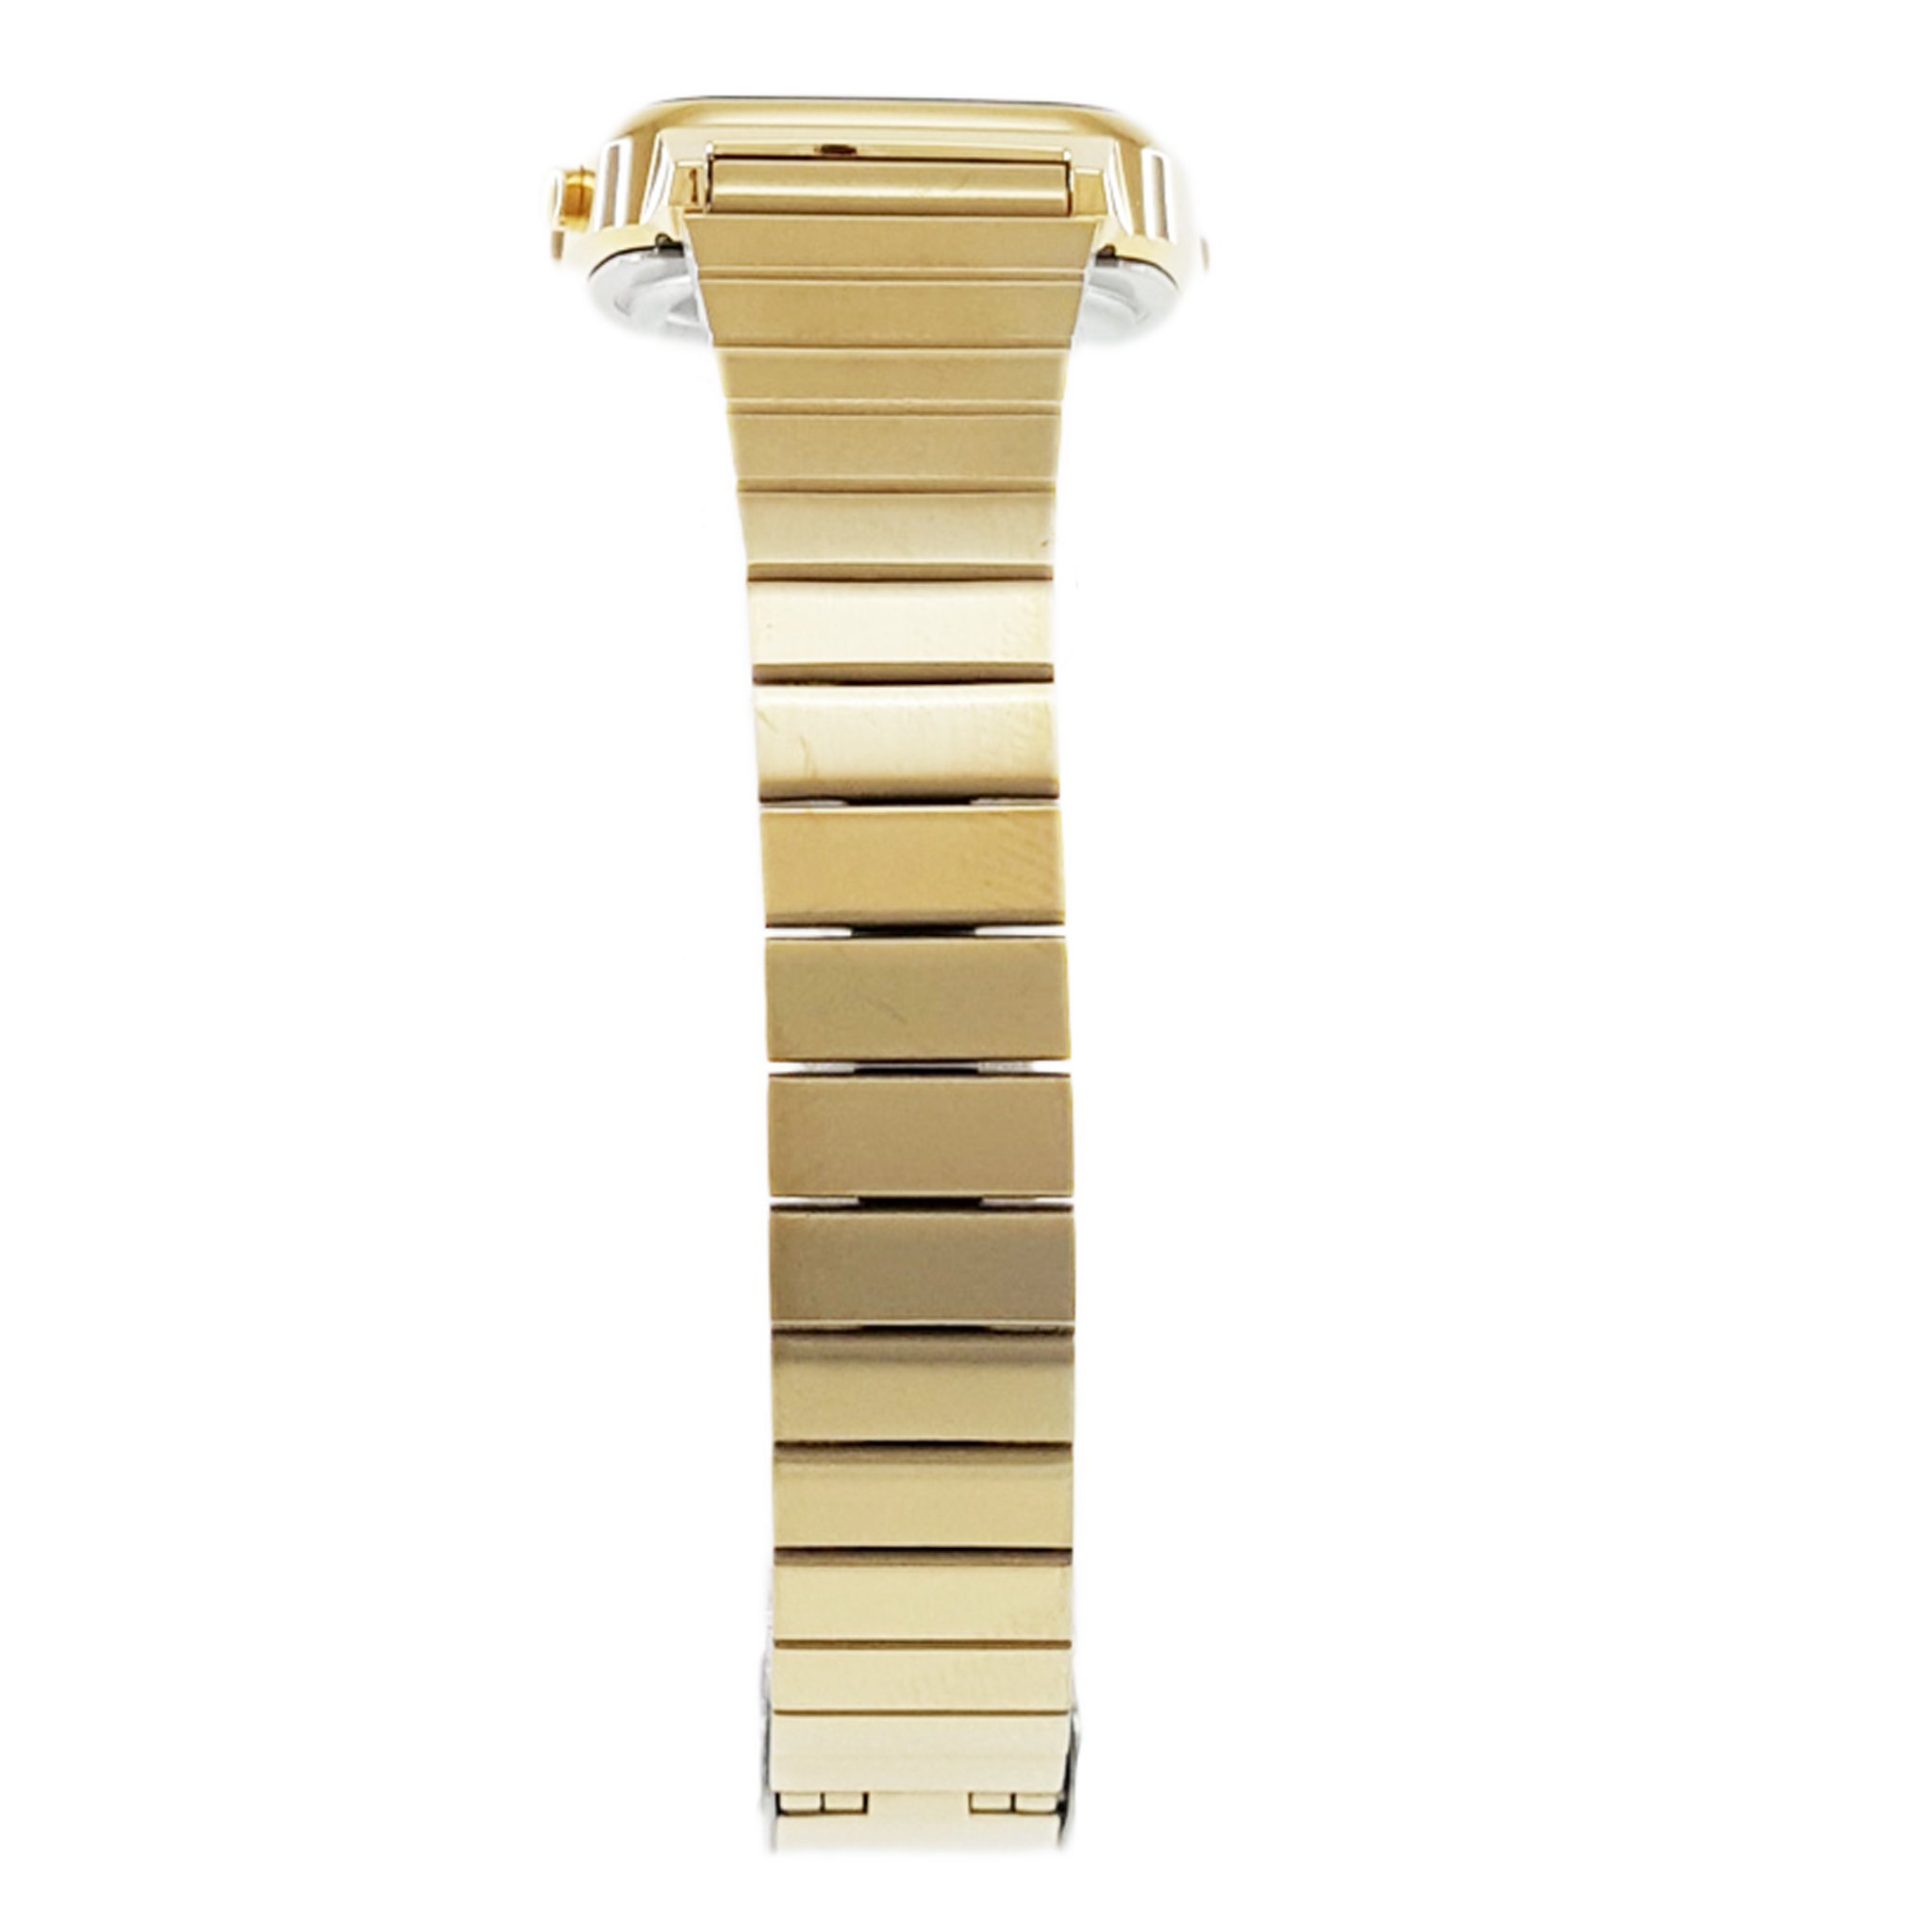 Casio Women's LA-670WG-9D Gold Steel Casual Digital Watch